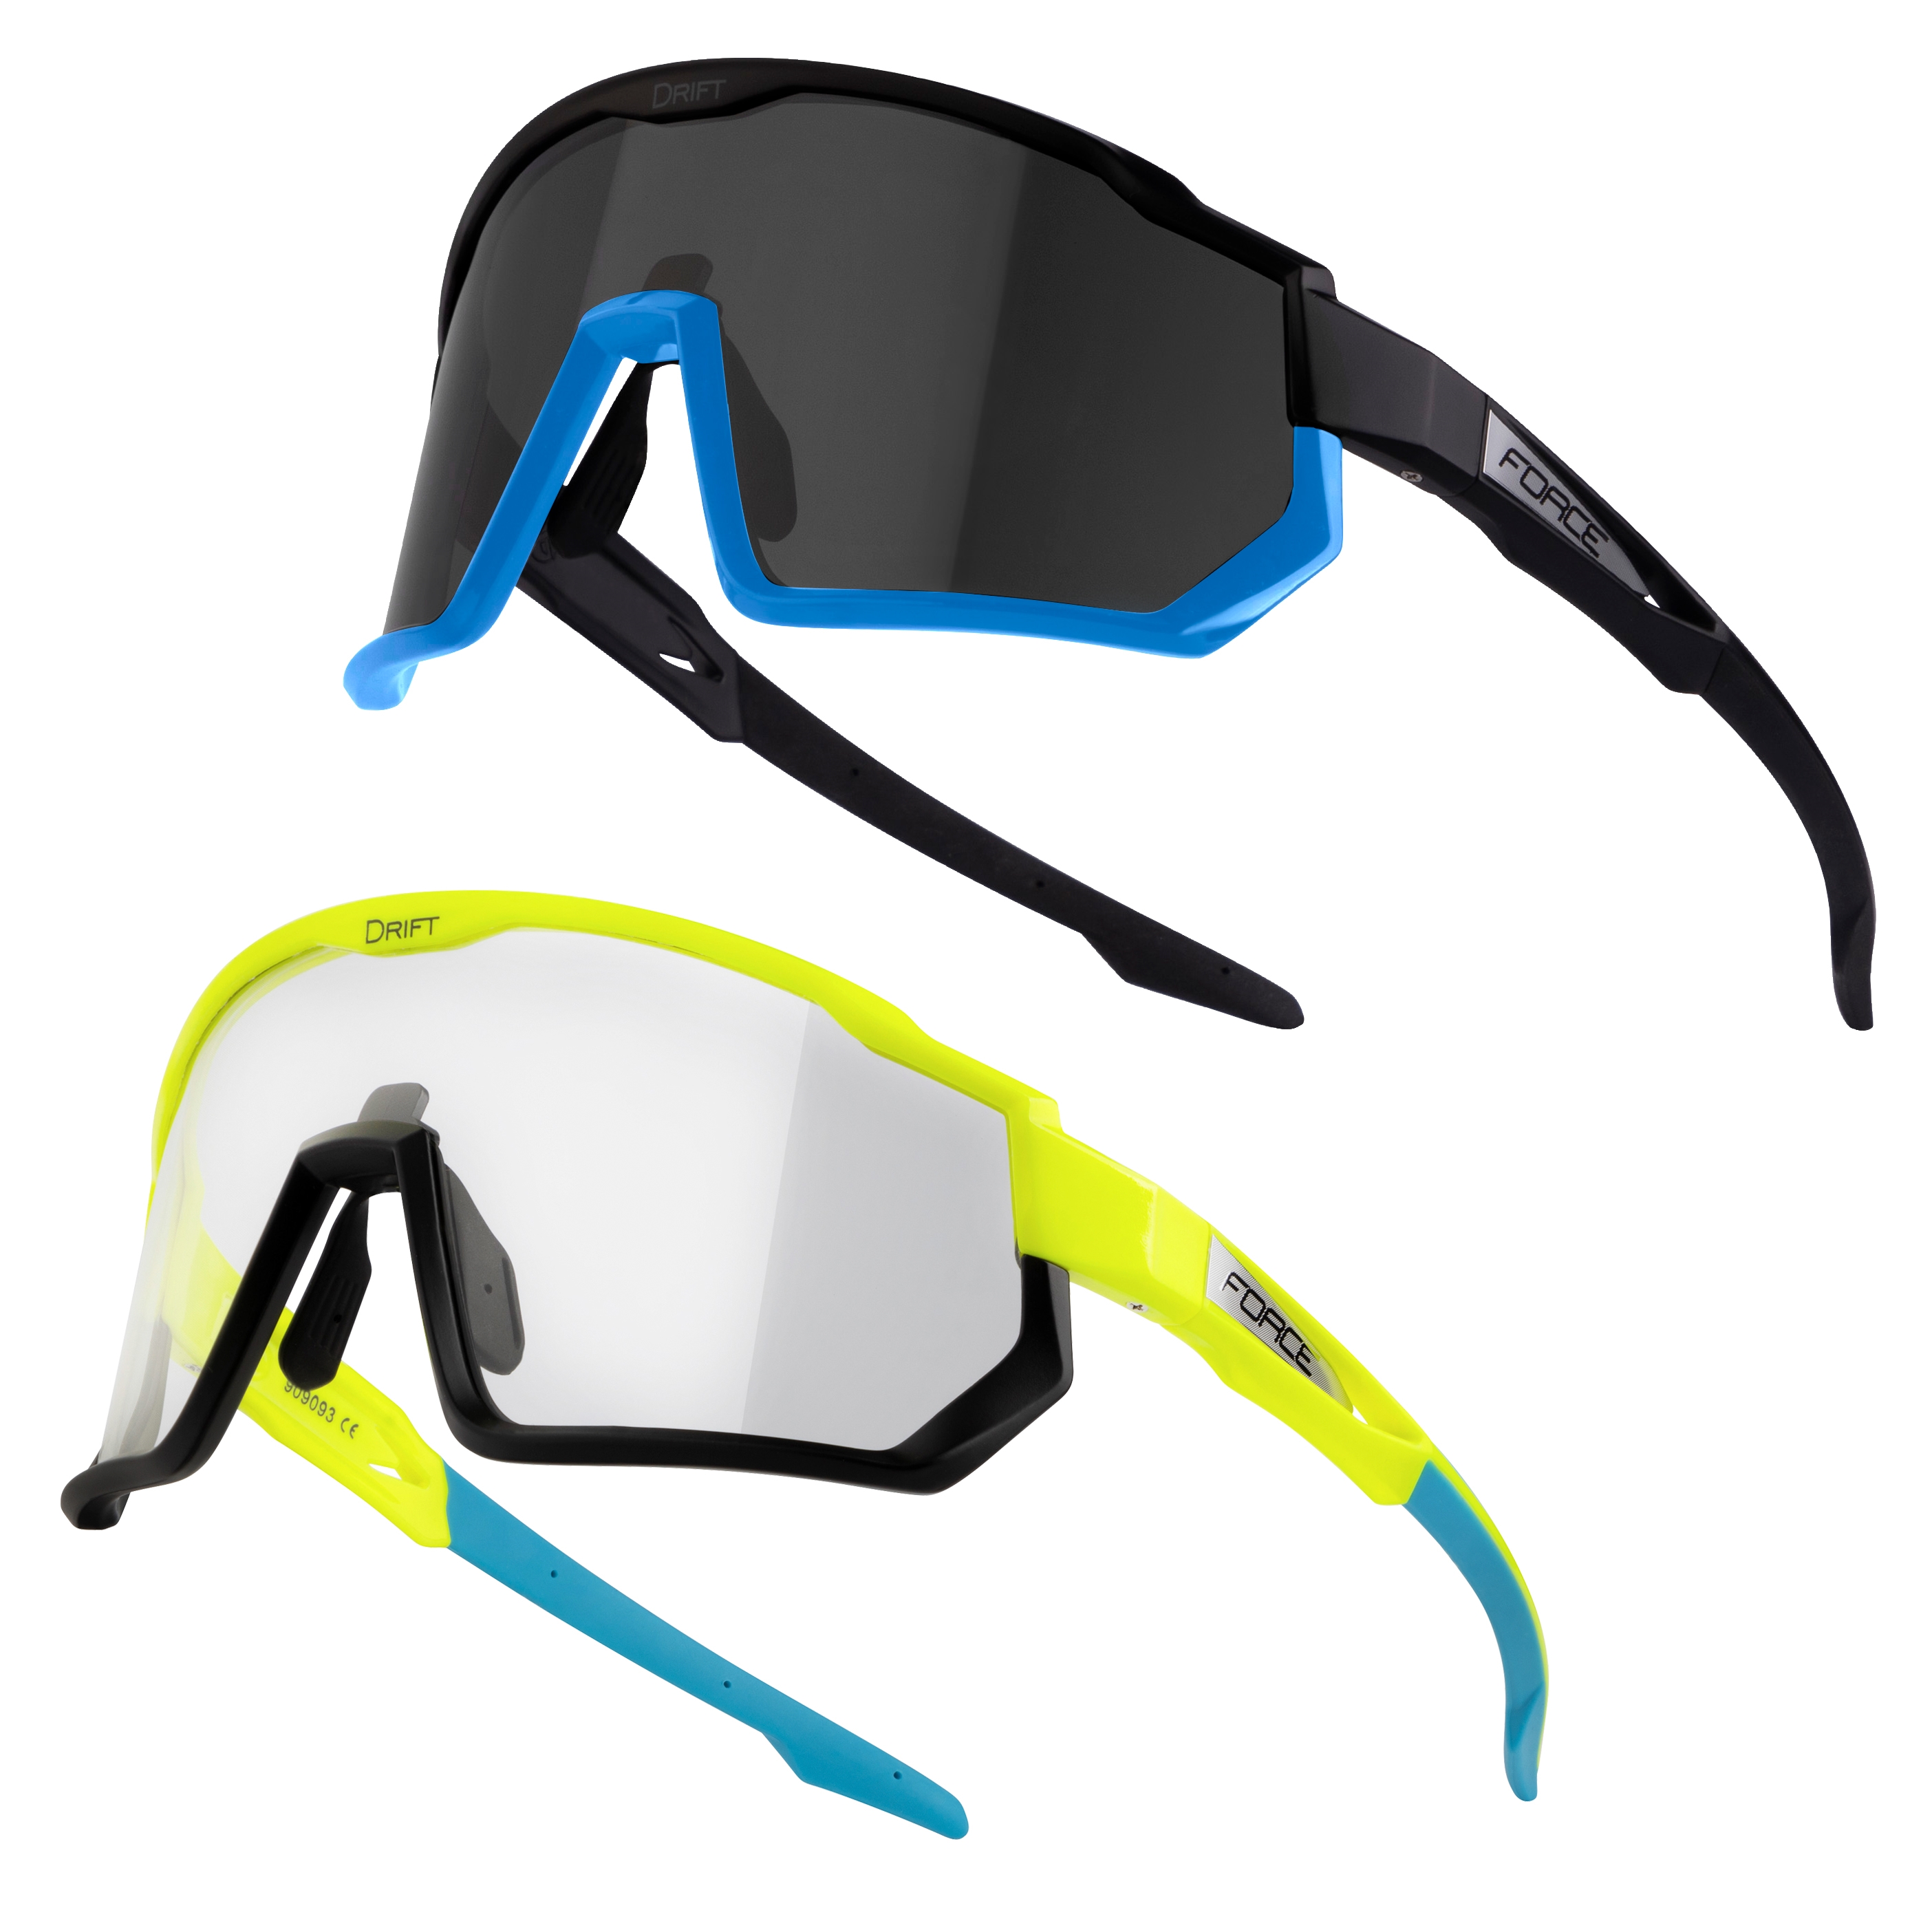 FORCE brýle F DRIFT 1x fluo+1x černé,foto+čer. sklo SADA Barva: Fluo, určení: cyklistické, skla: fotochromatická